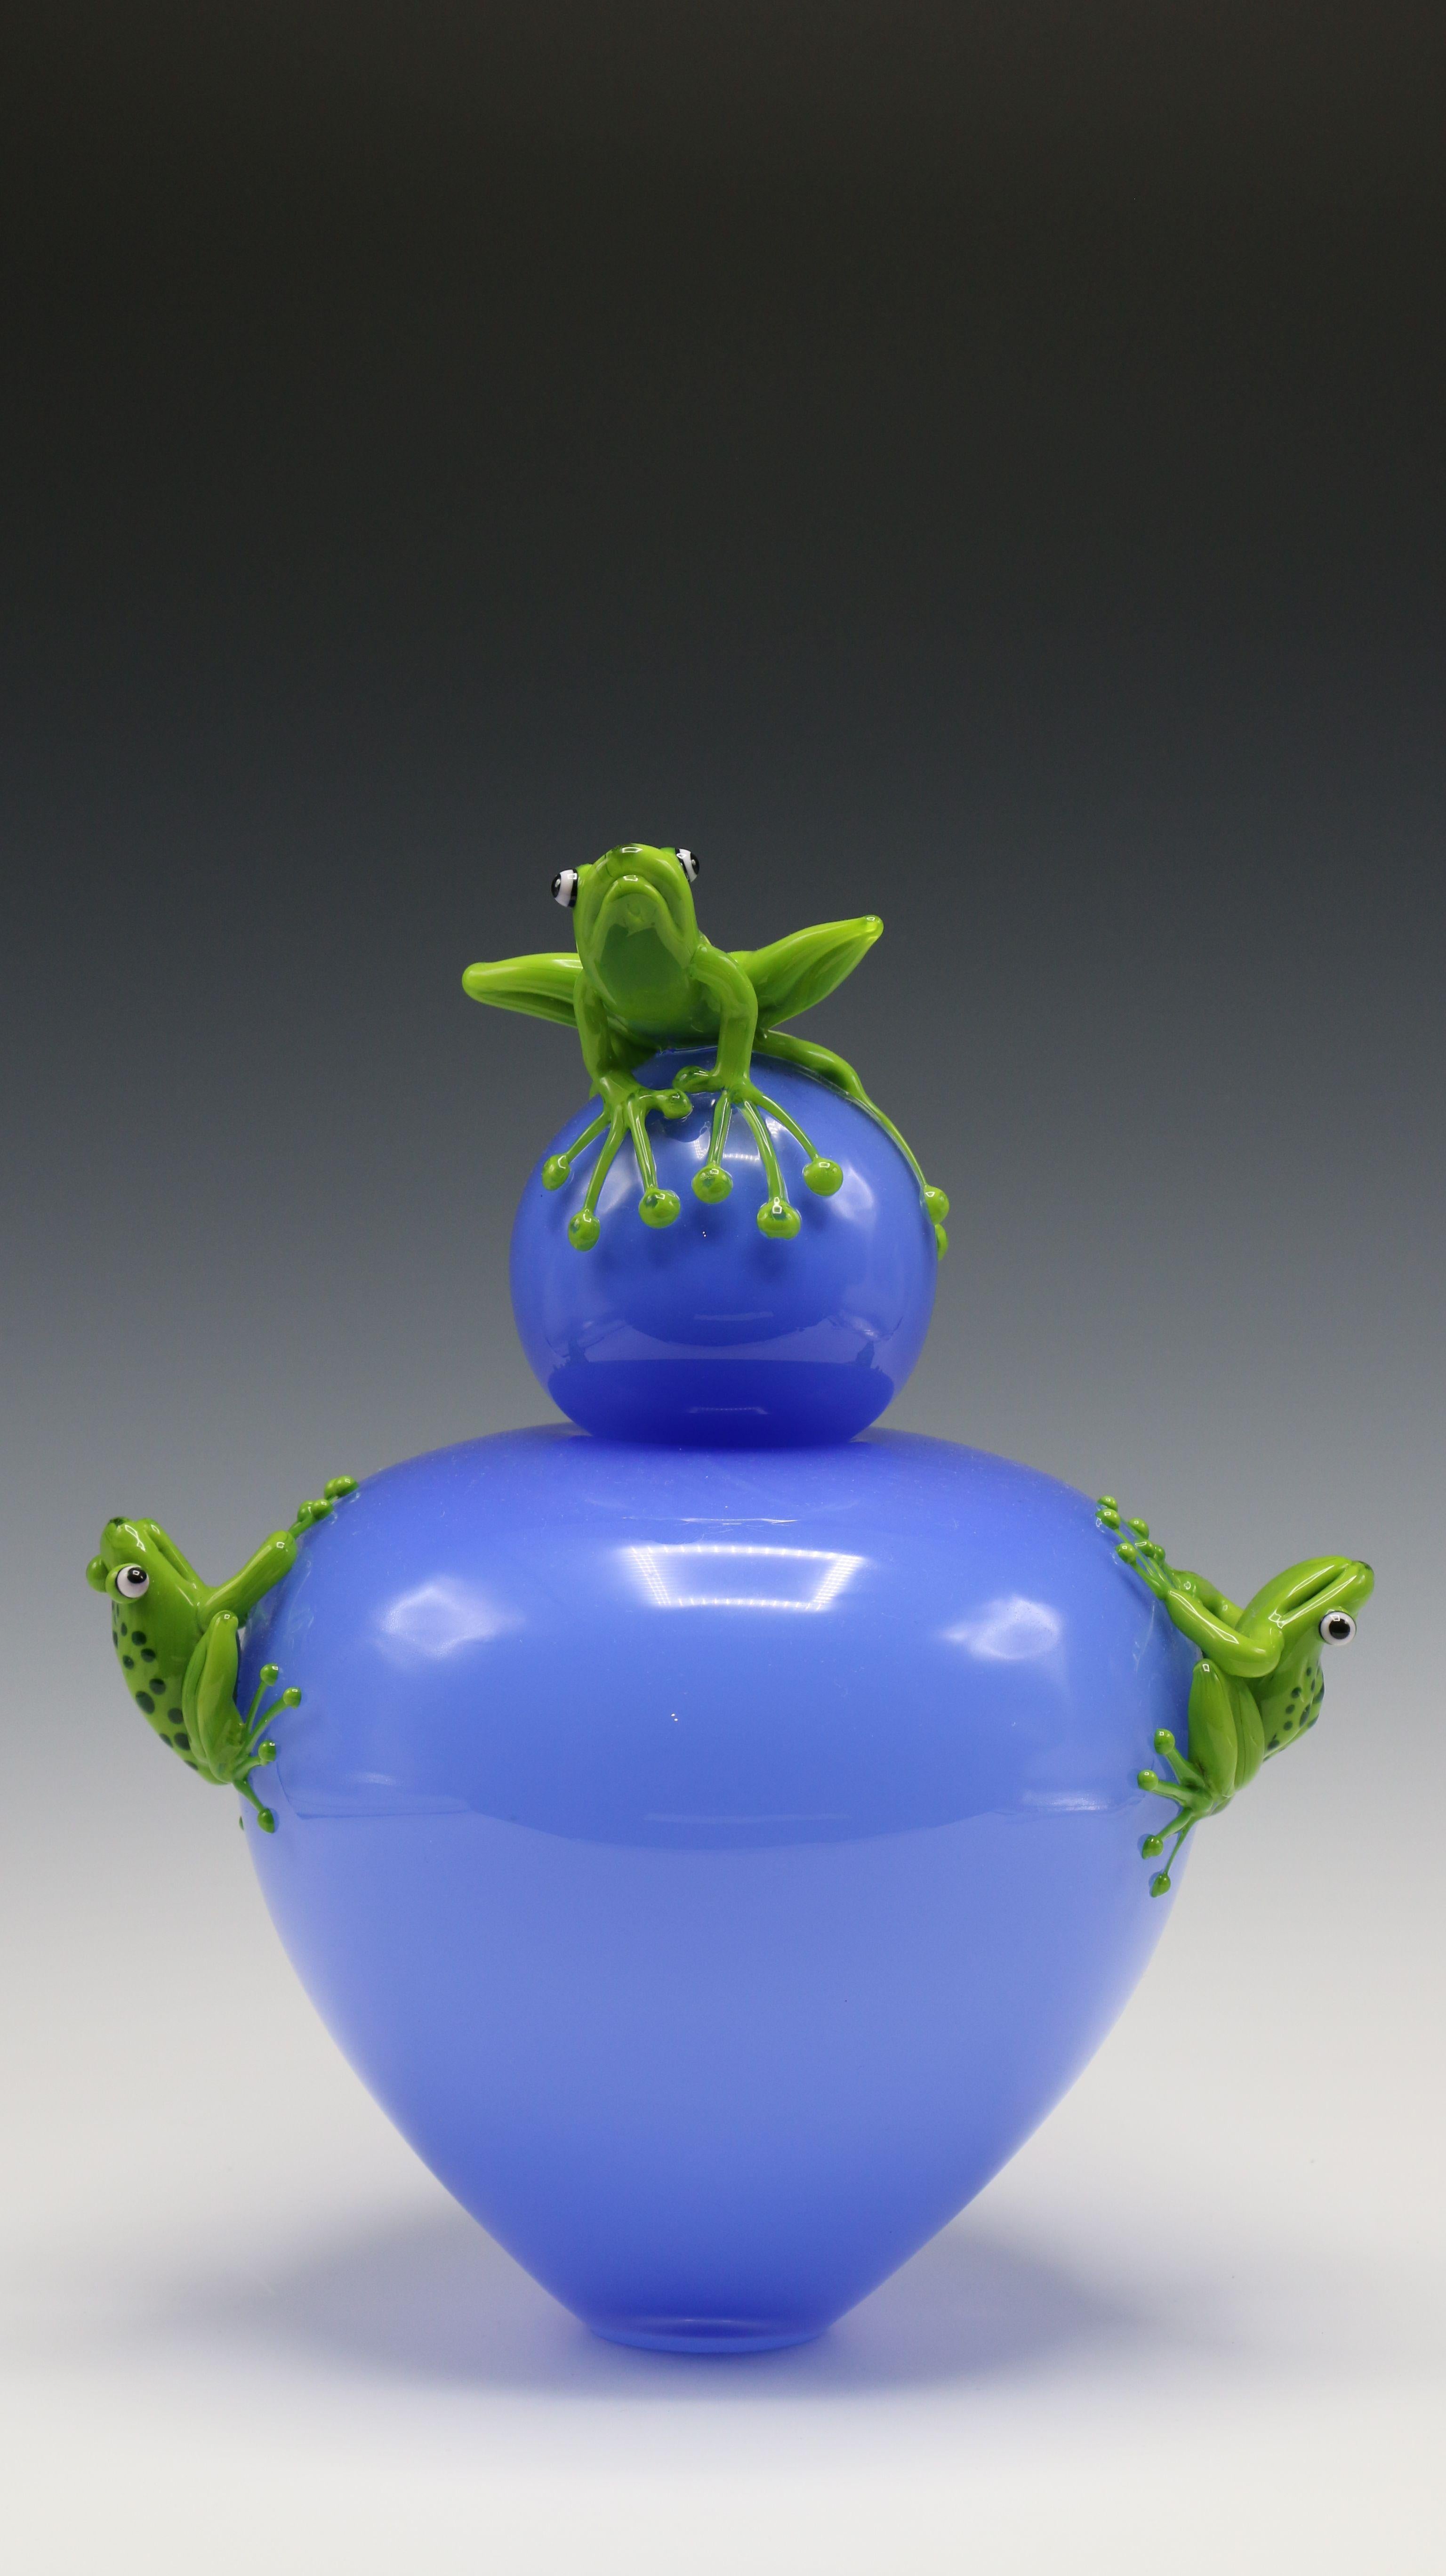 Vase grenouille - Sculpture de Joe Peters and Peter Muller